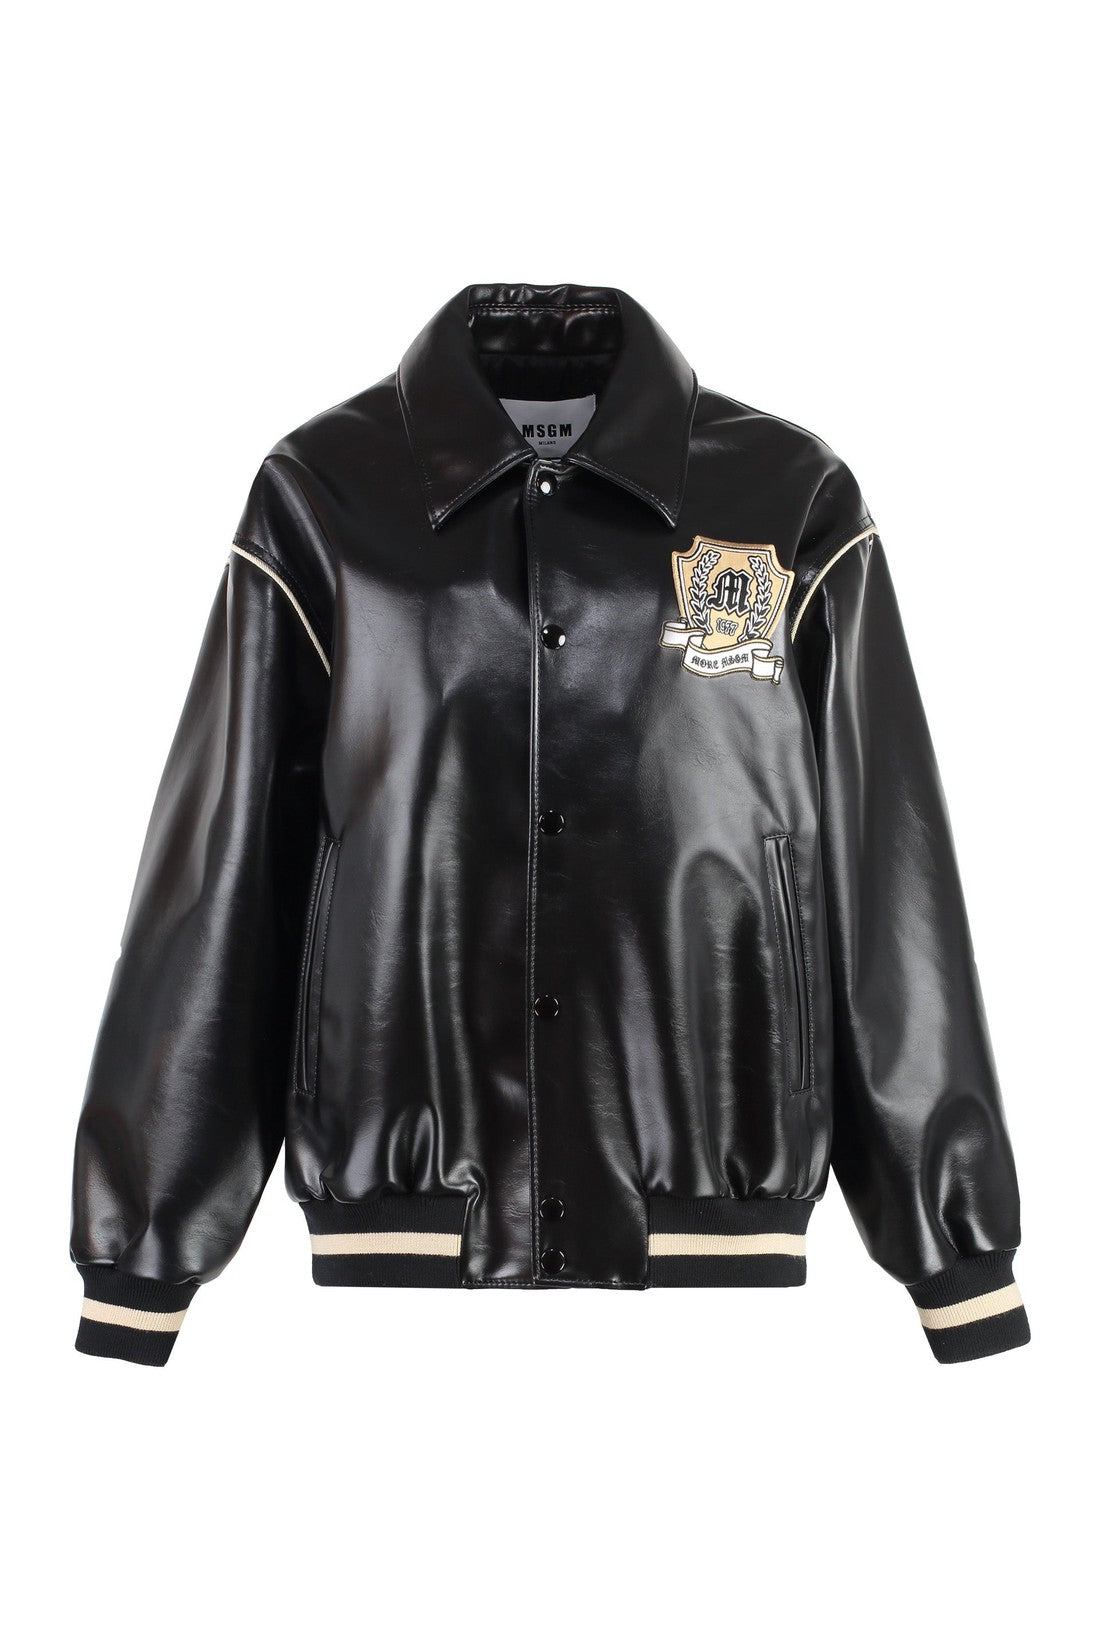 MSGM-OUTLET-SALE-Faux leather jacket-ARCHIVIST